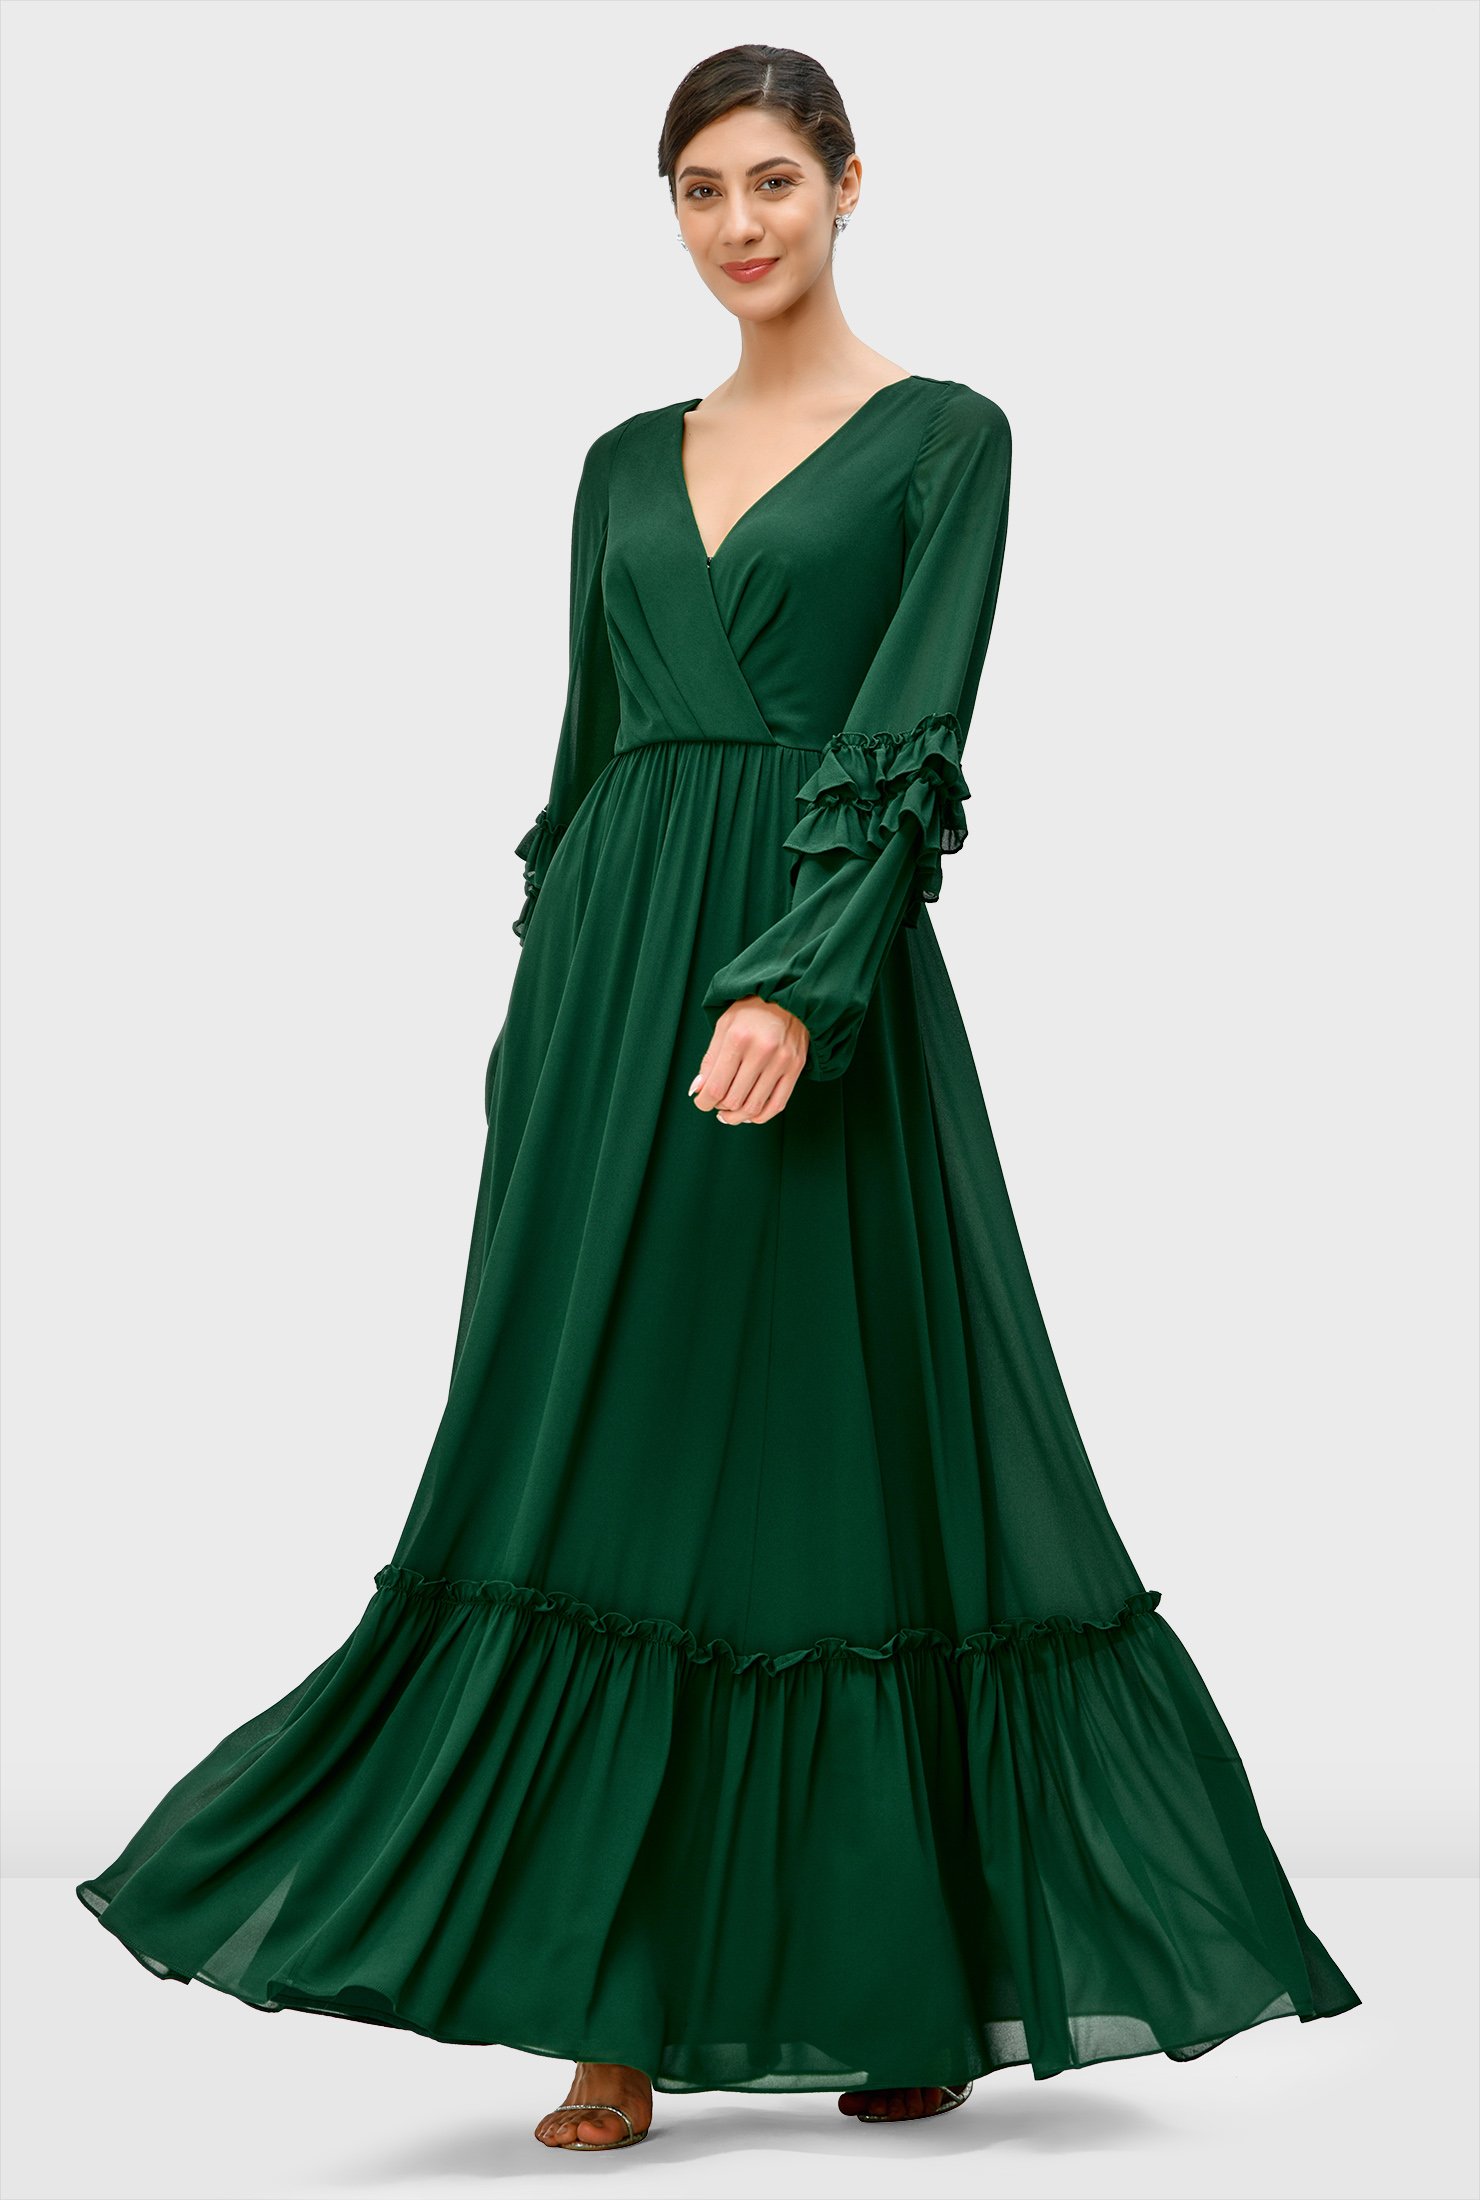 Gift for Her Maxi Dress Waist Belted Flounce Dress Green Long Dress Holiday Dress Ankle Lenght Summer Dress Cotton Evening Dress